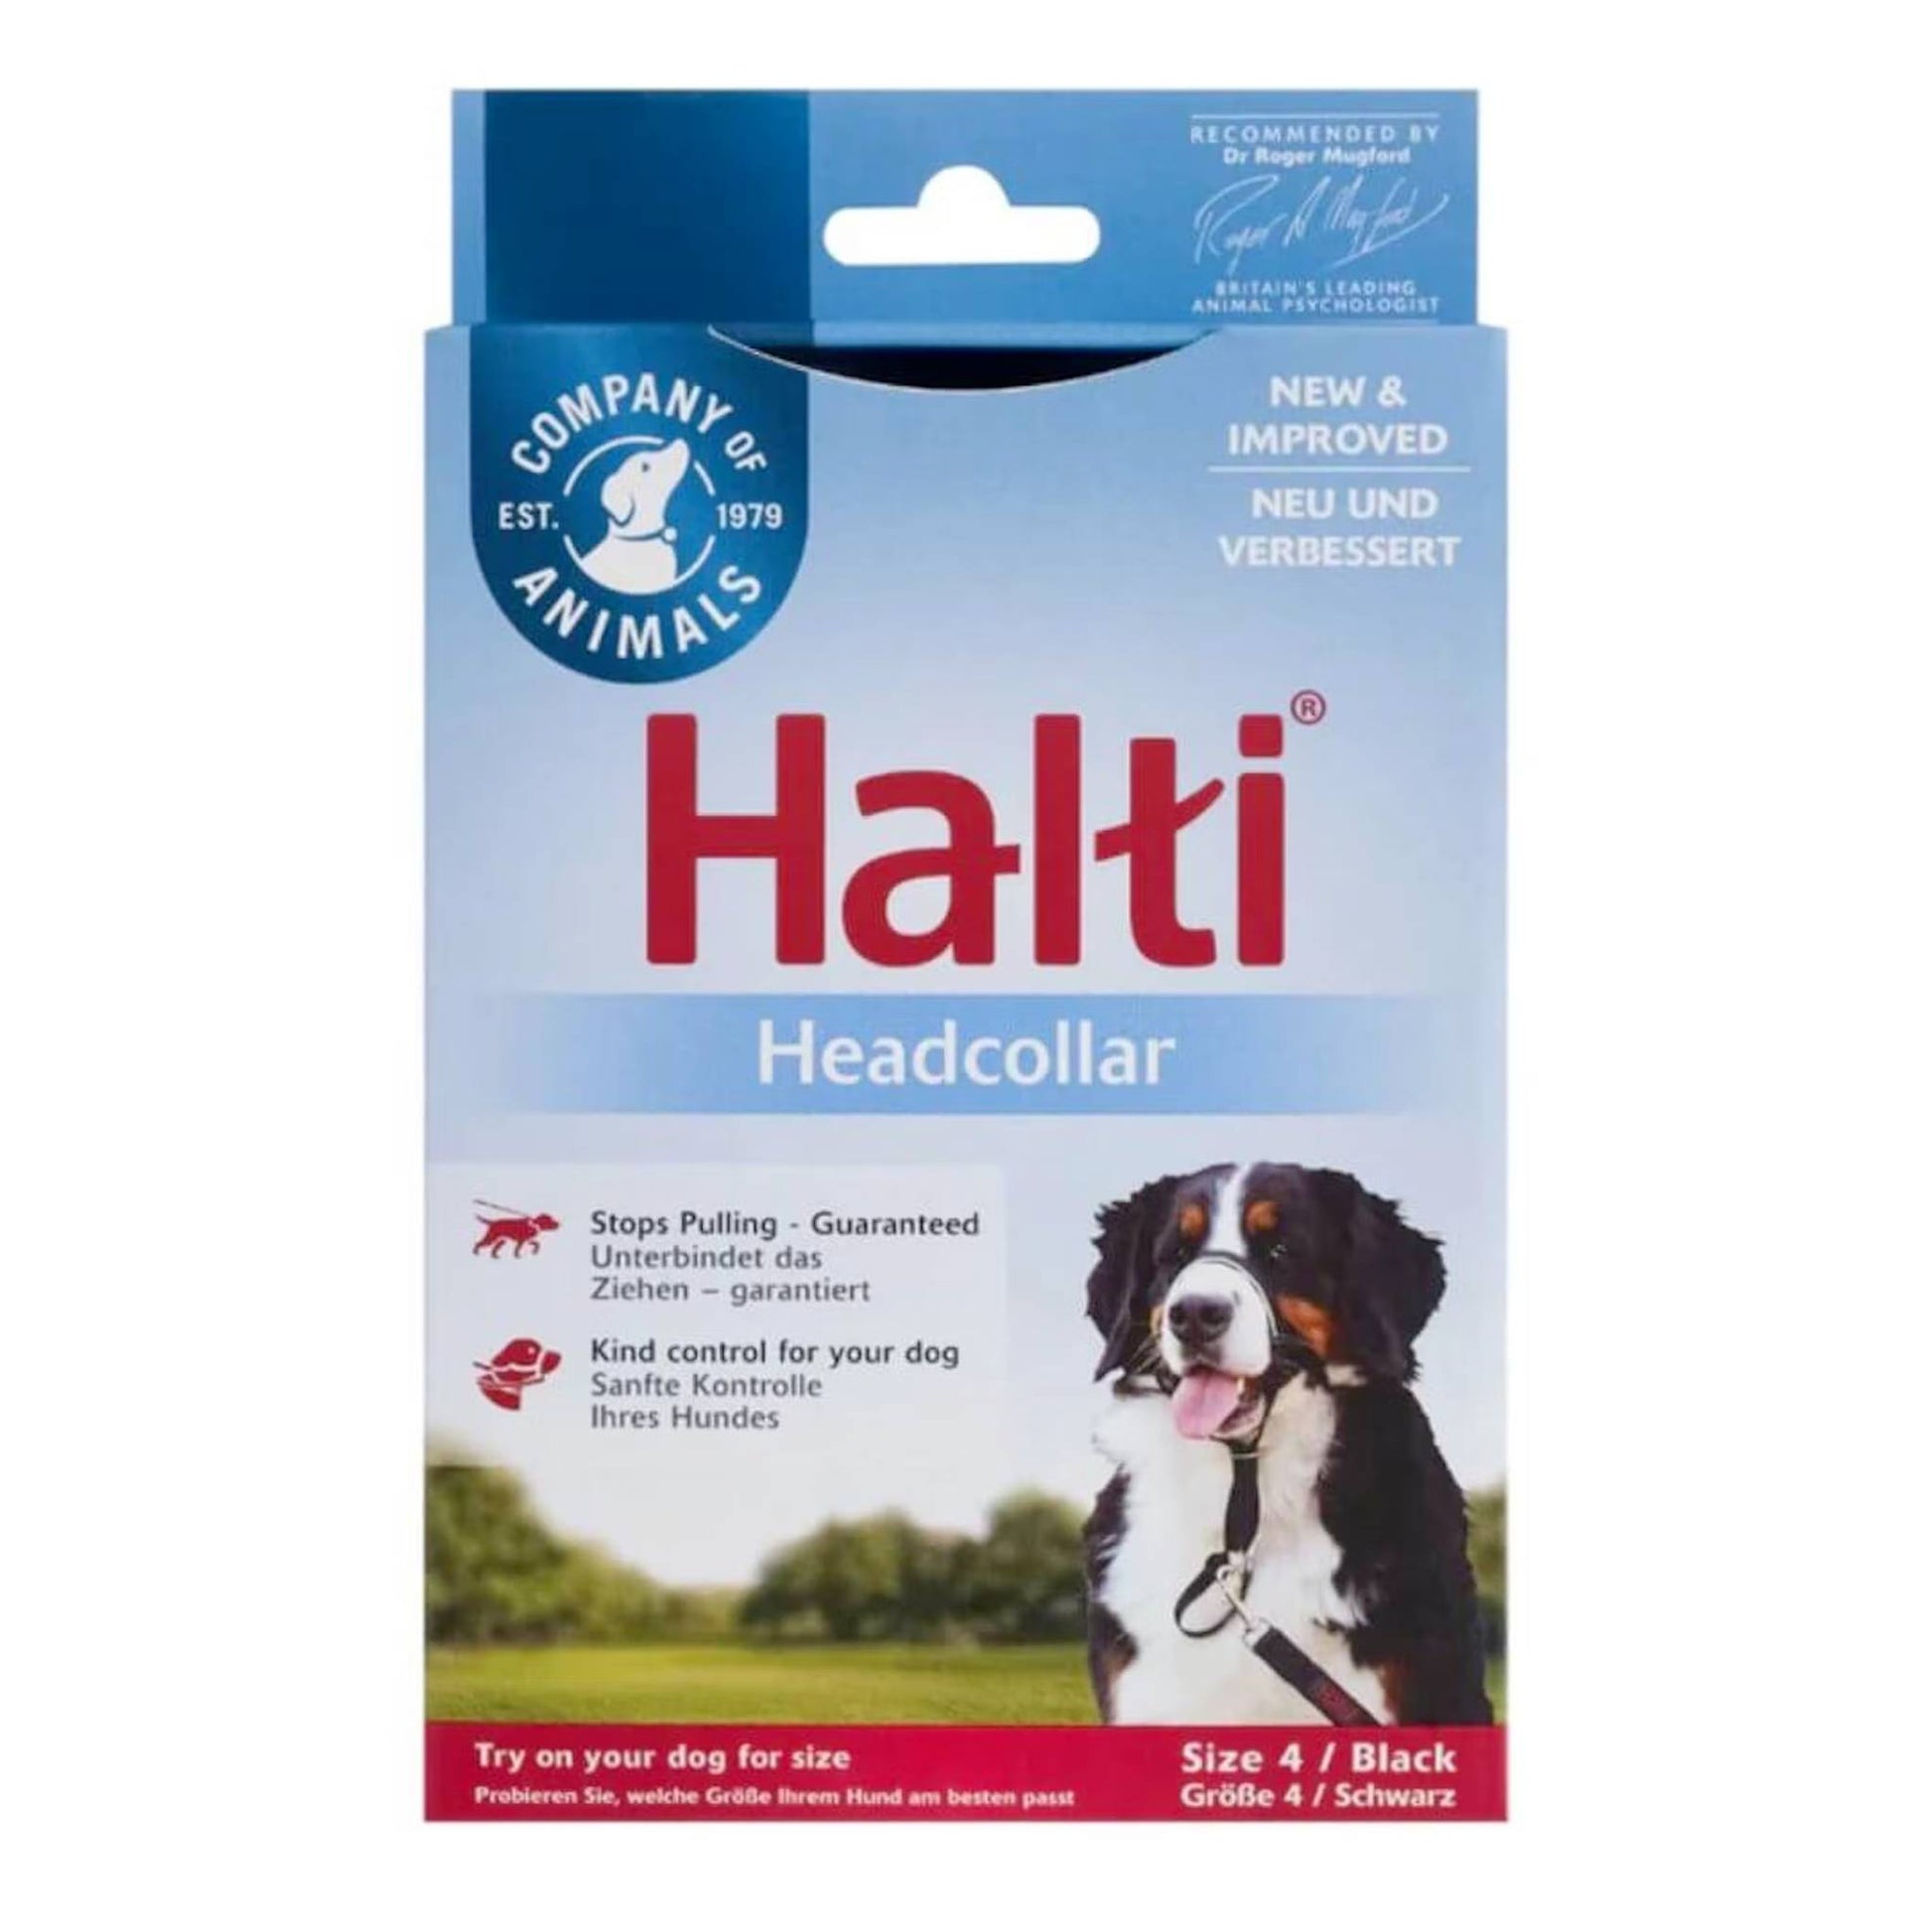 Halti headcollar for dogs size 4